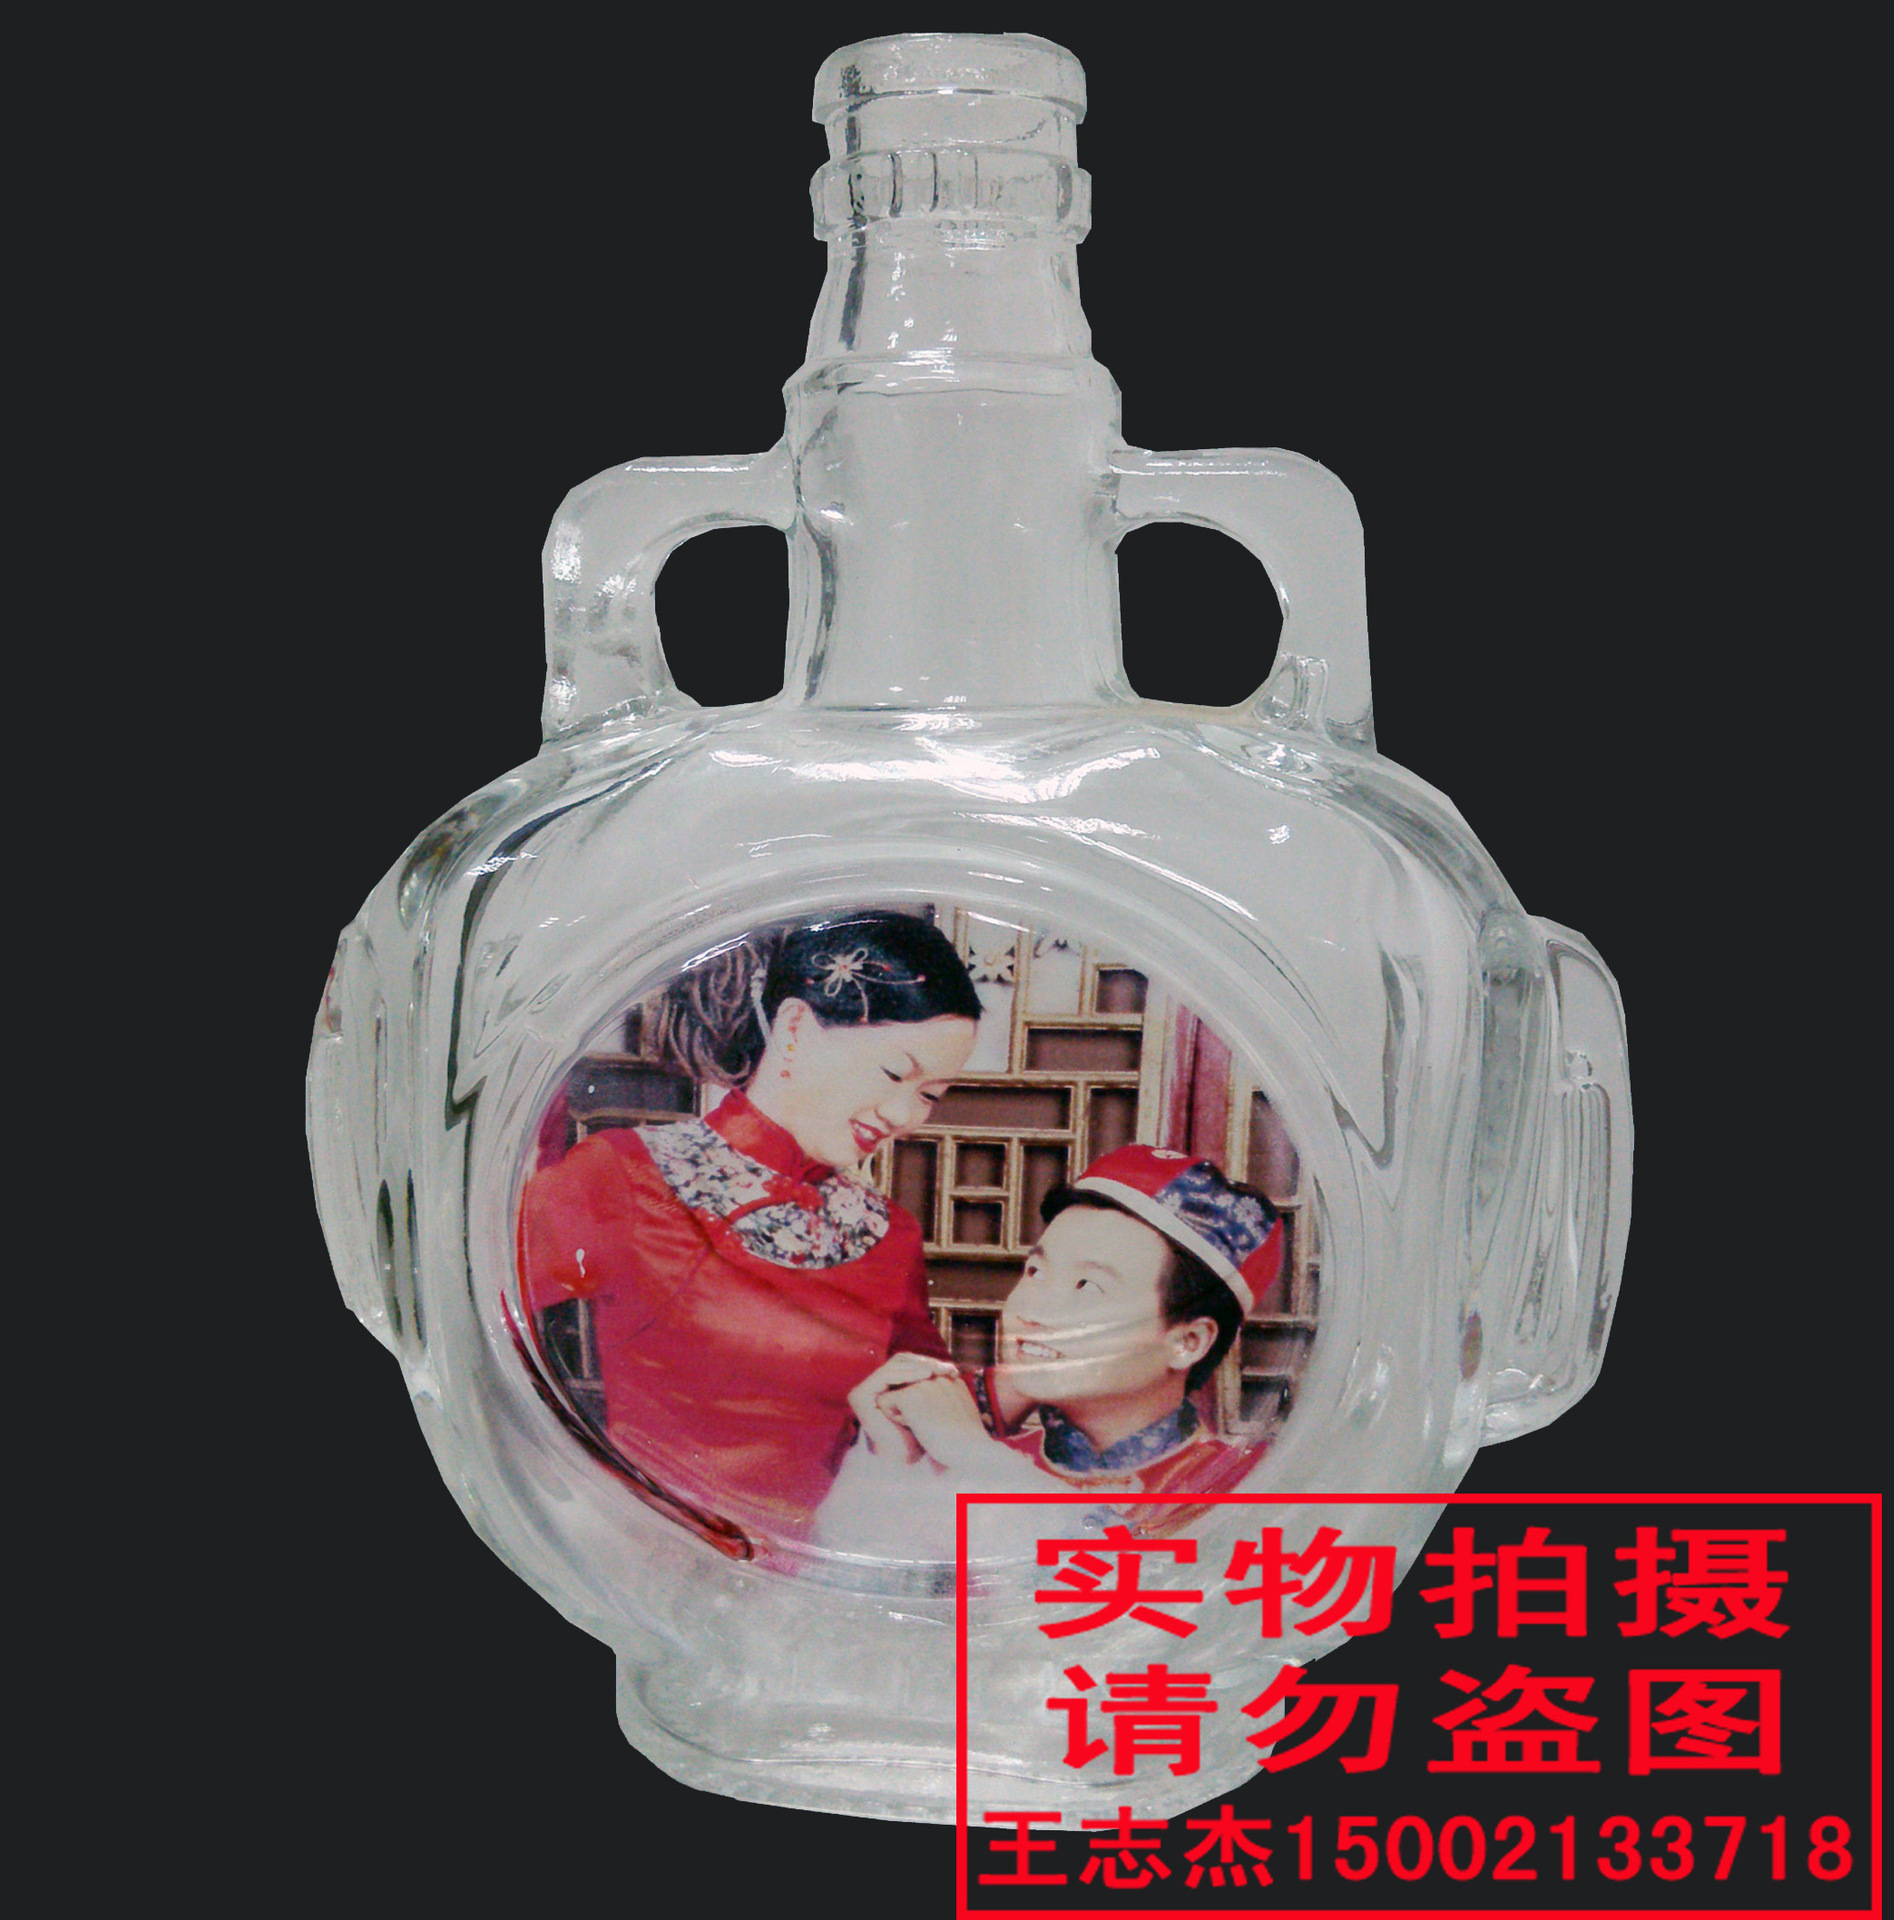 其他印刷设备价格_上海白酒酒瓶彩照万能打印